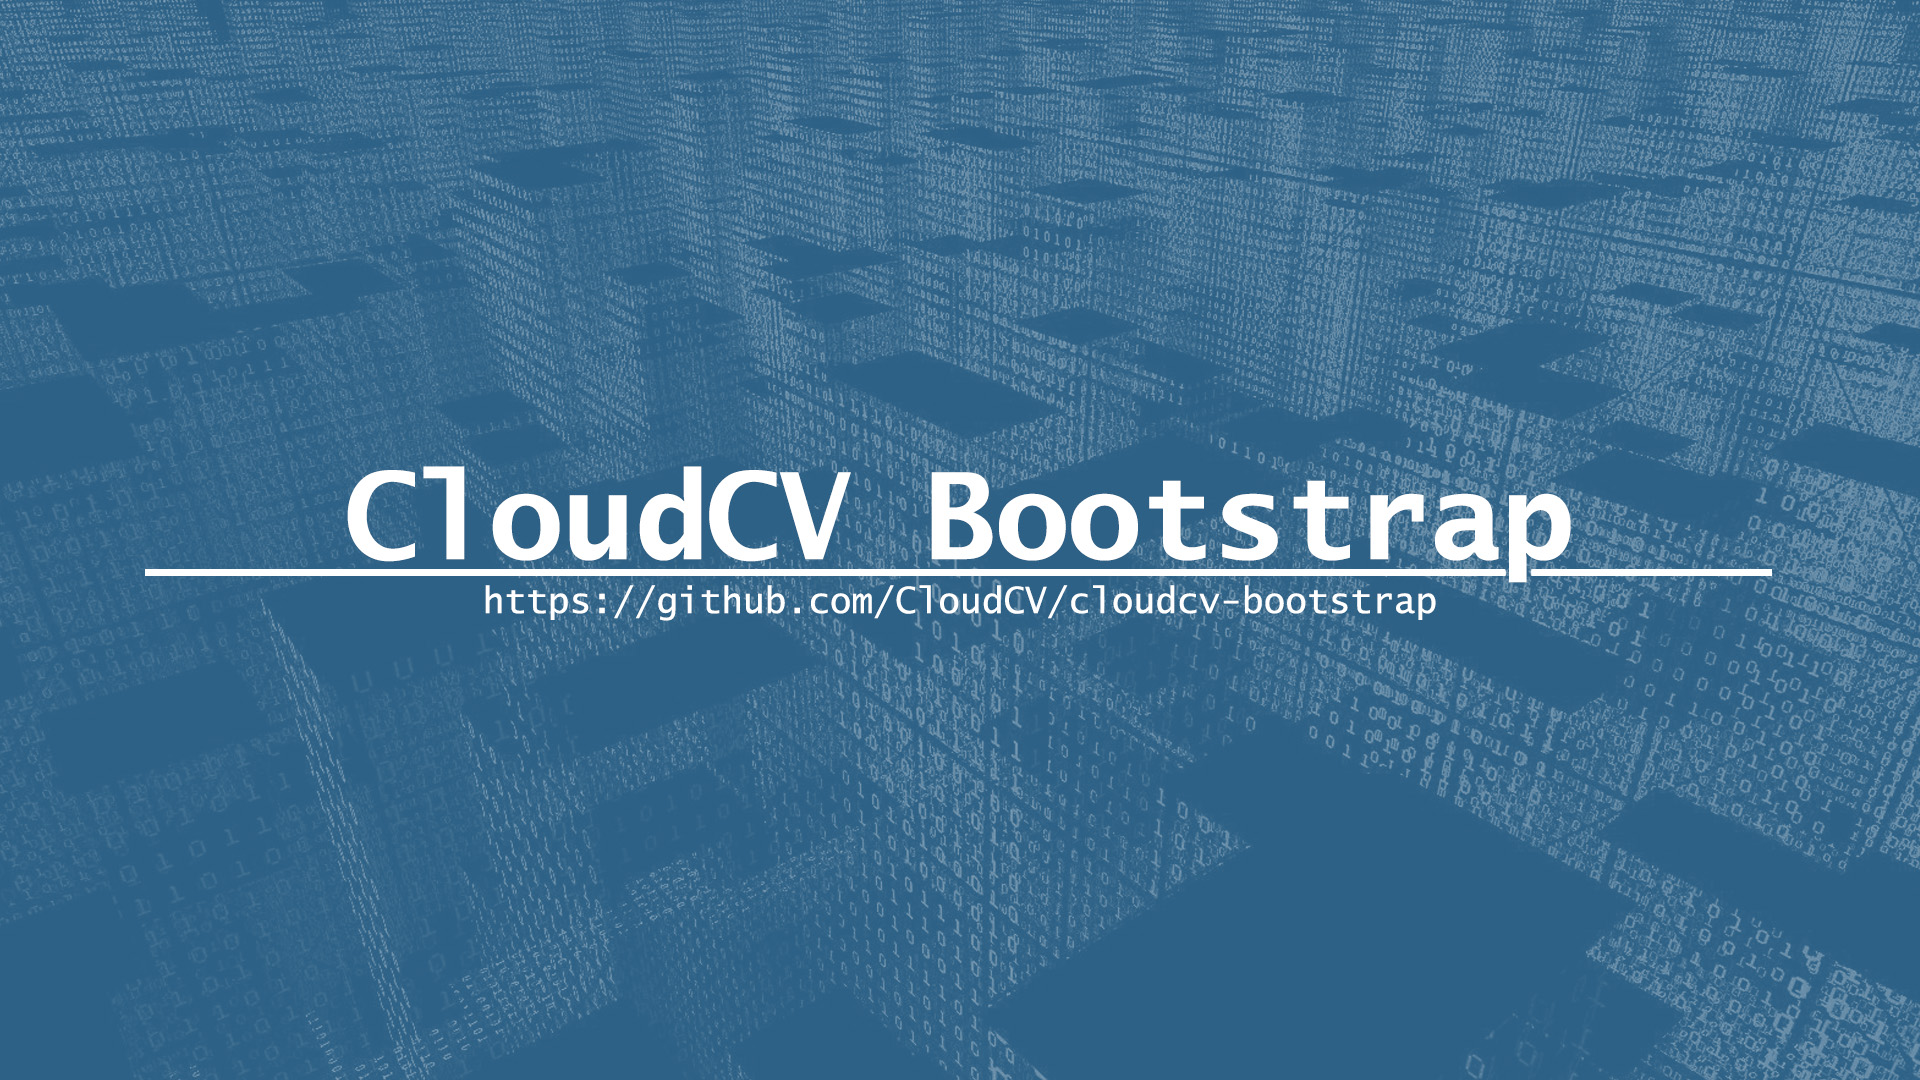 CloudCV Boostrap